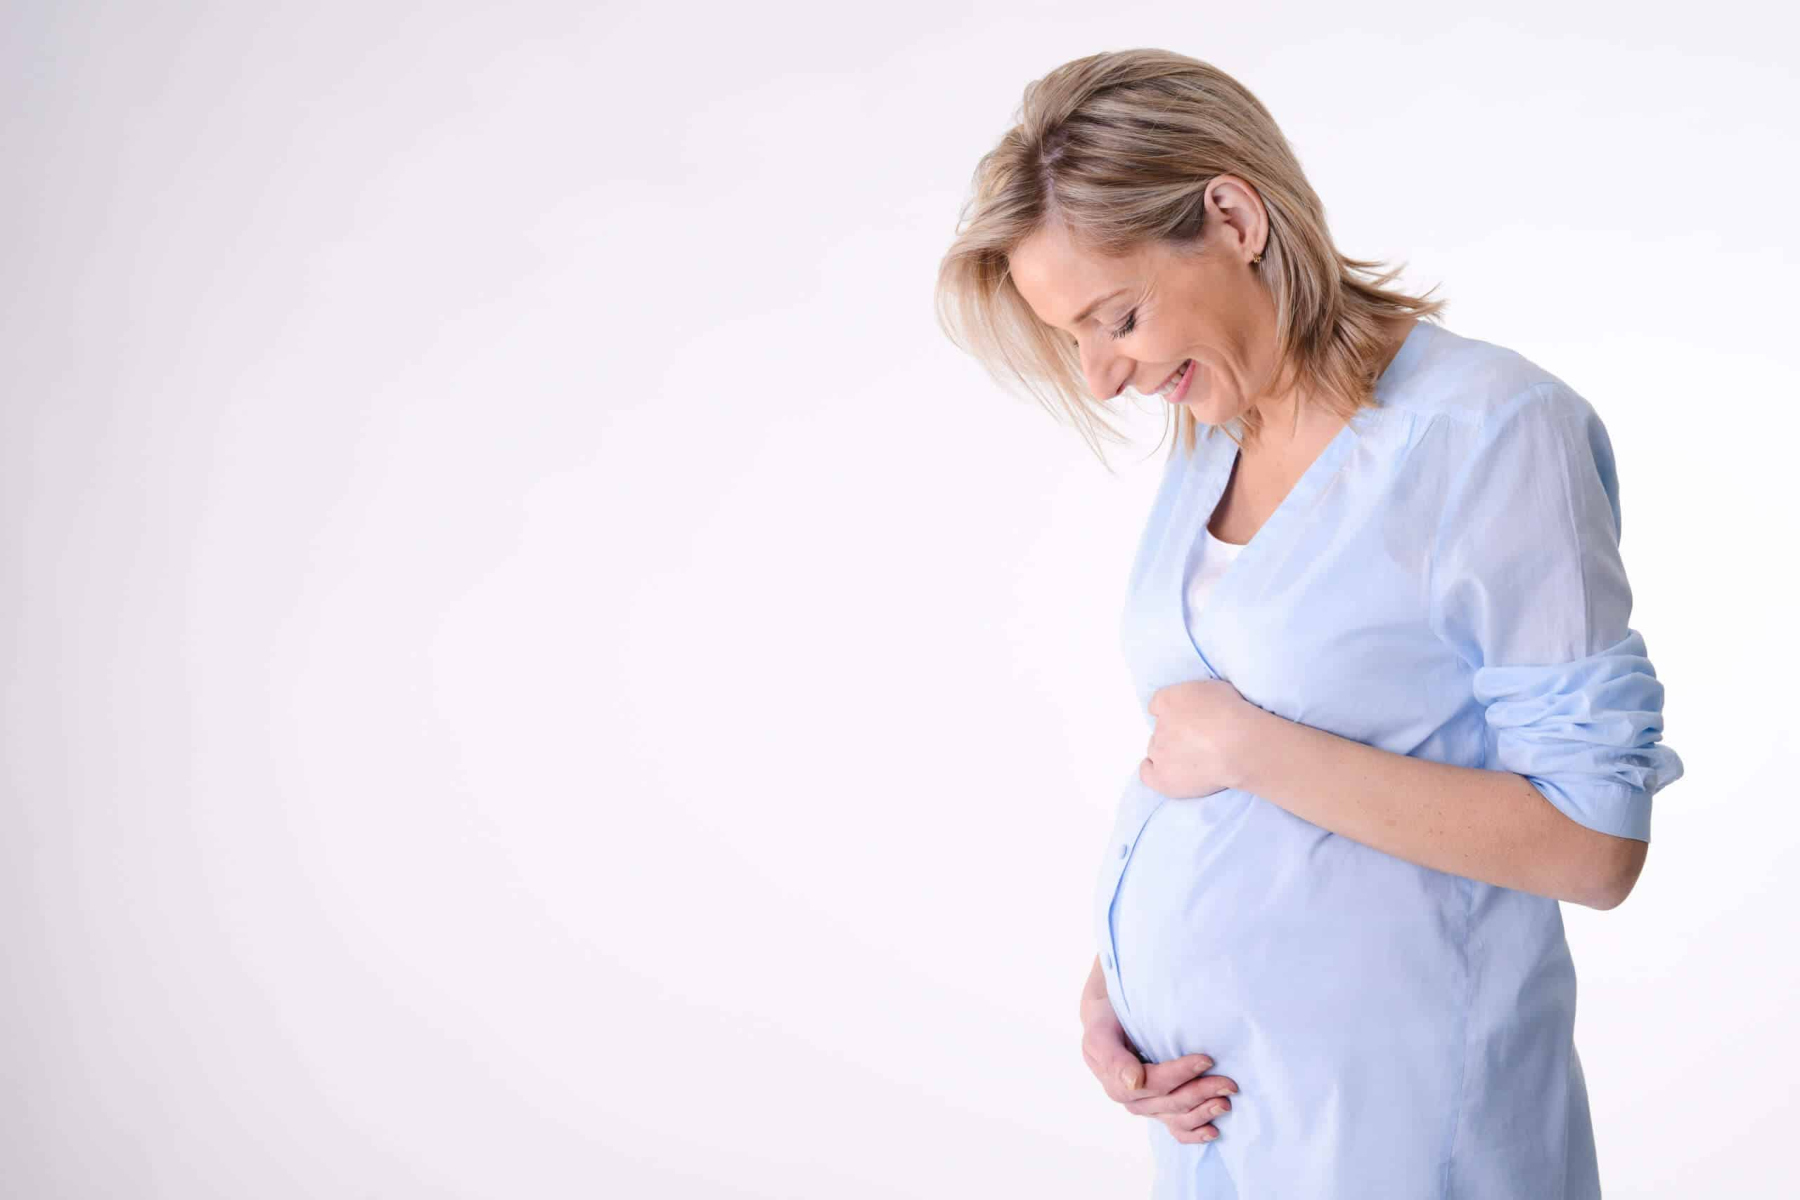 ΗΠΑ: Οι θάνατοι που σχετίζονται με την εγκυμοσύνη έπεσαν στα προ πανδημίας επίπεδα